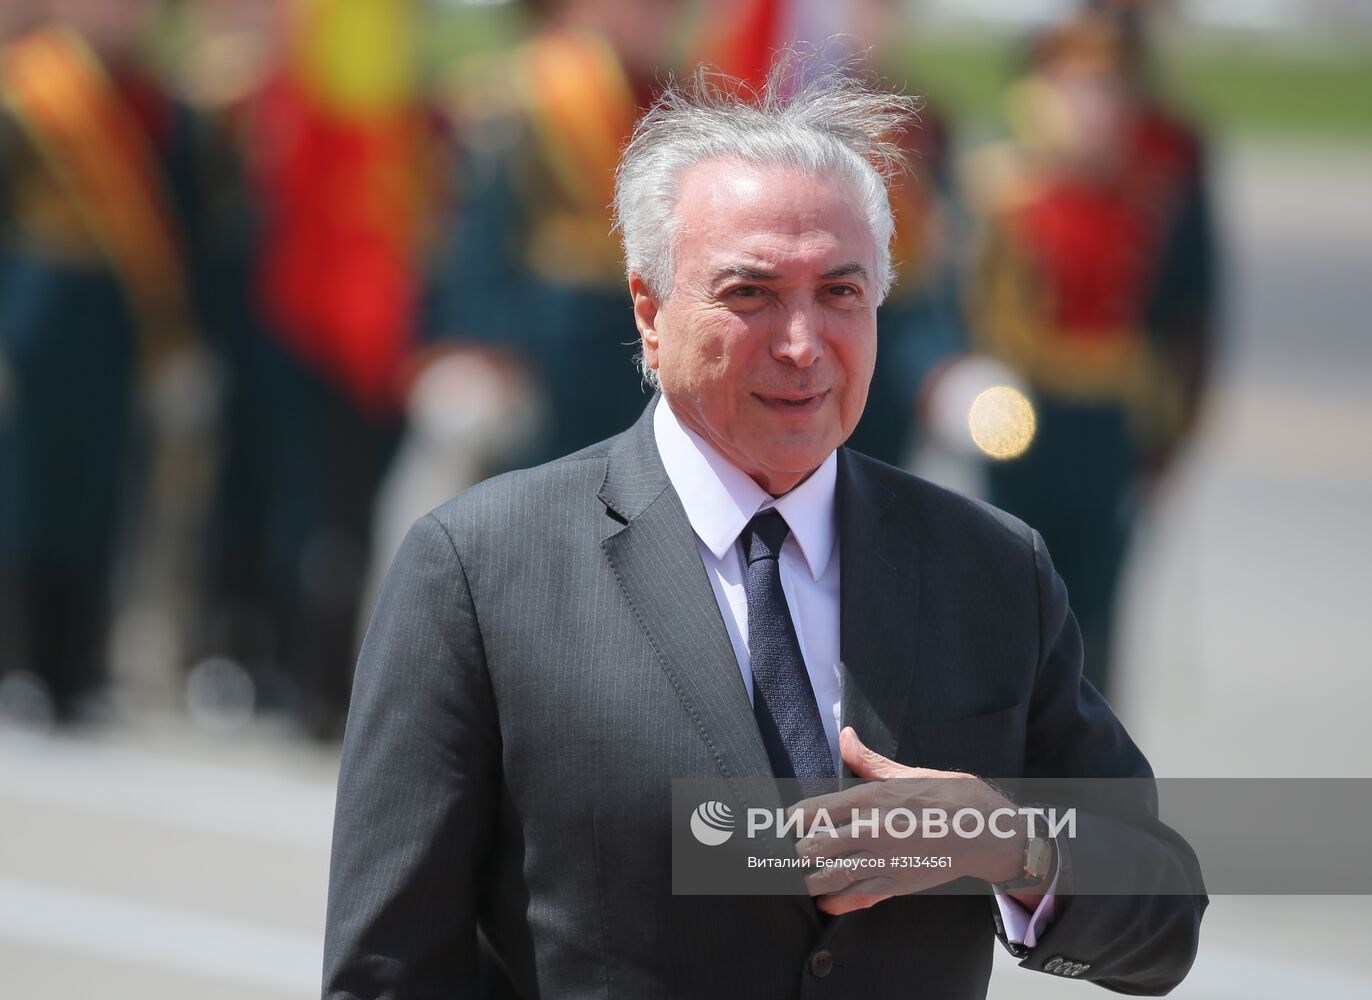 Прилет президента Республики Бразилия М. Темера в Москву